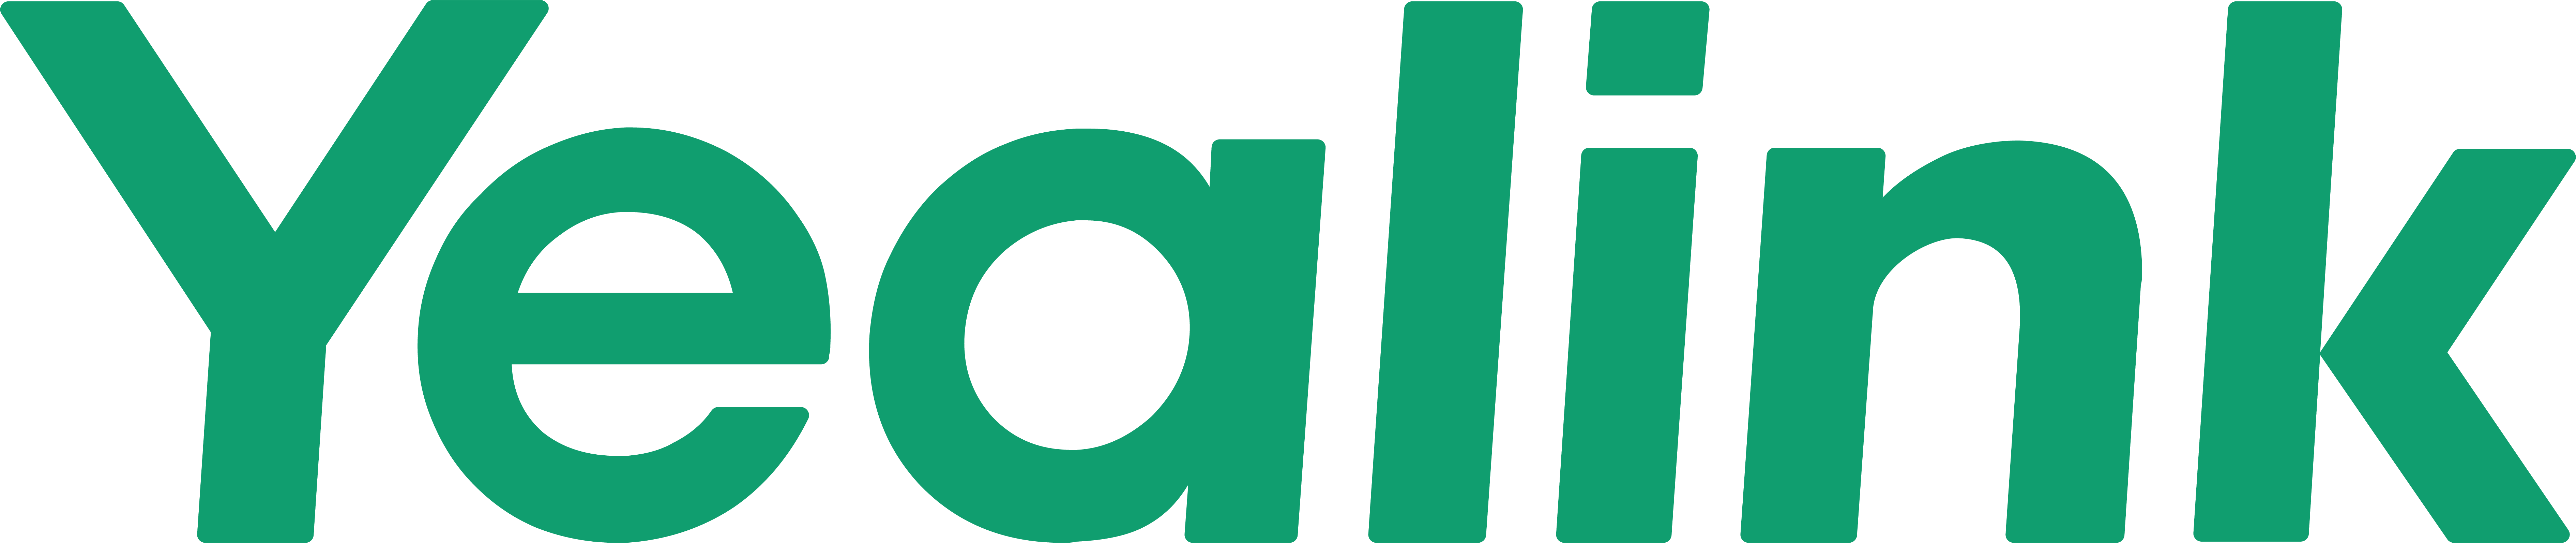 Logo der Firma Yealink mit grünem Schriftzug 